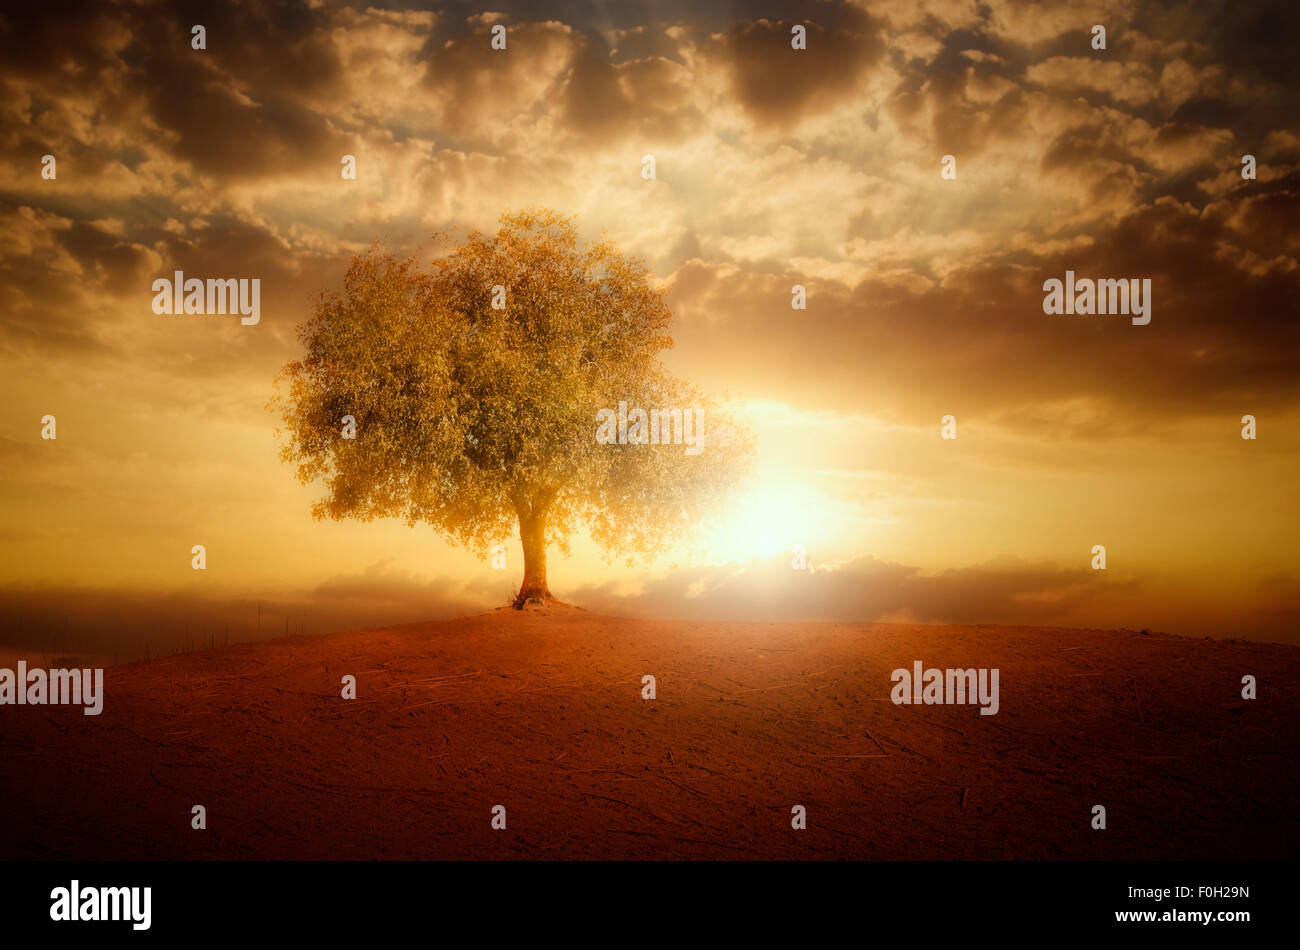 Solitario árbol y sunset Foto de stock